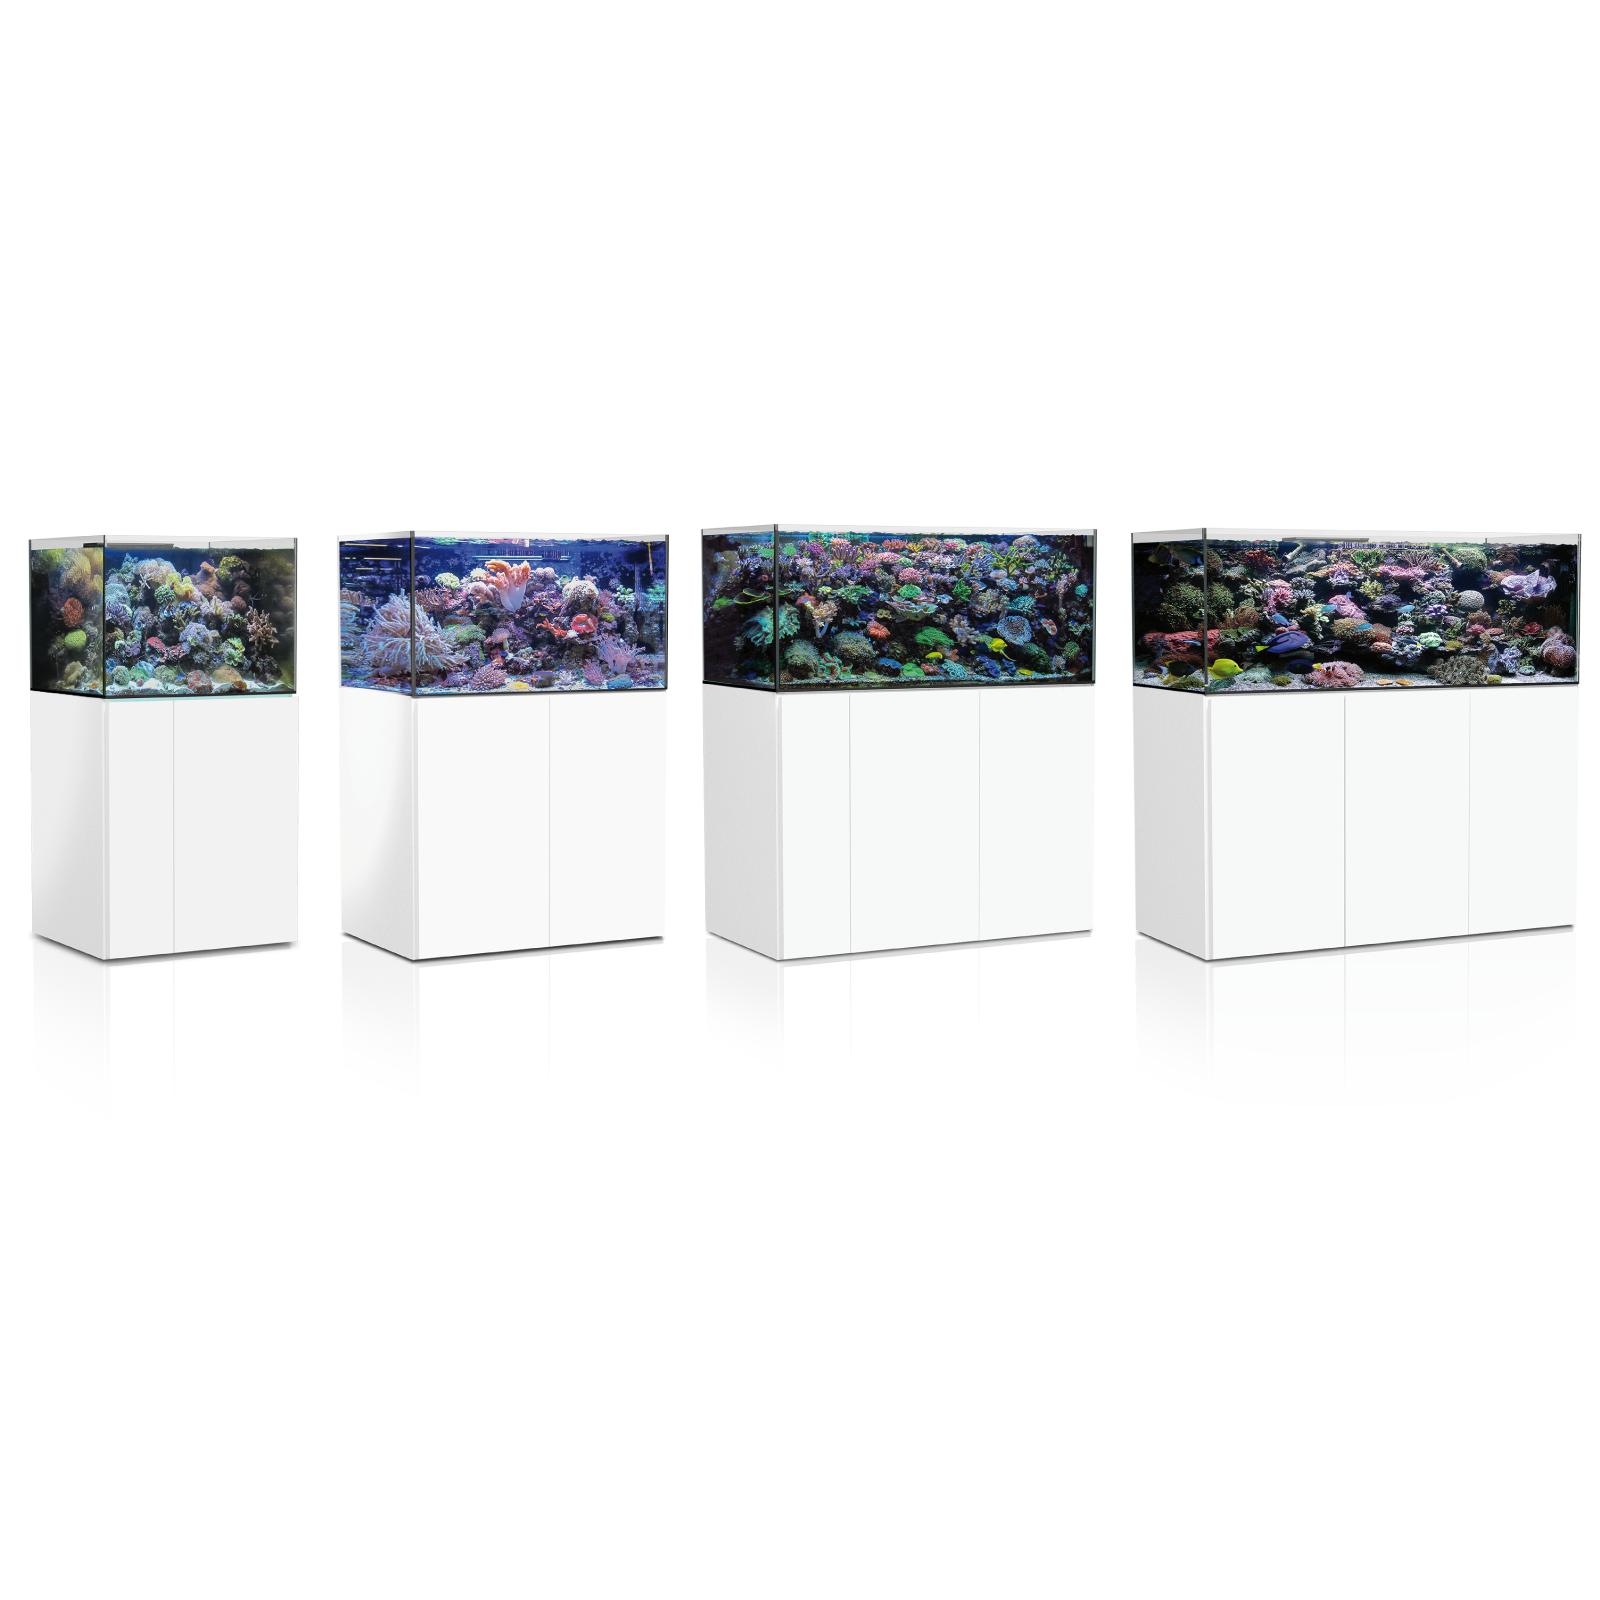  Aqua Medic Aquarium - Armatus 575 XD white